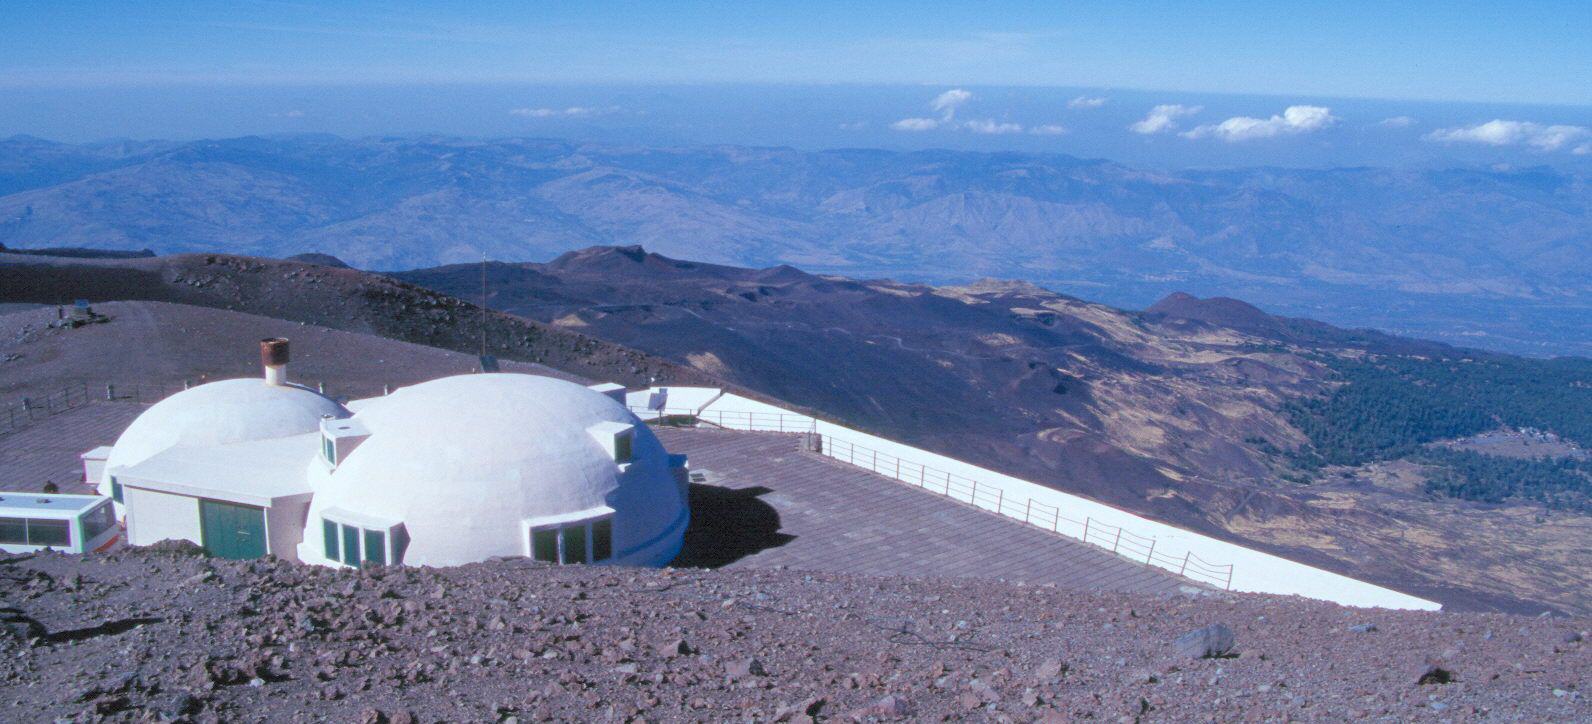 Nuevo observatorio que sustituye al destruido en las erupciones de 1971